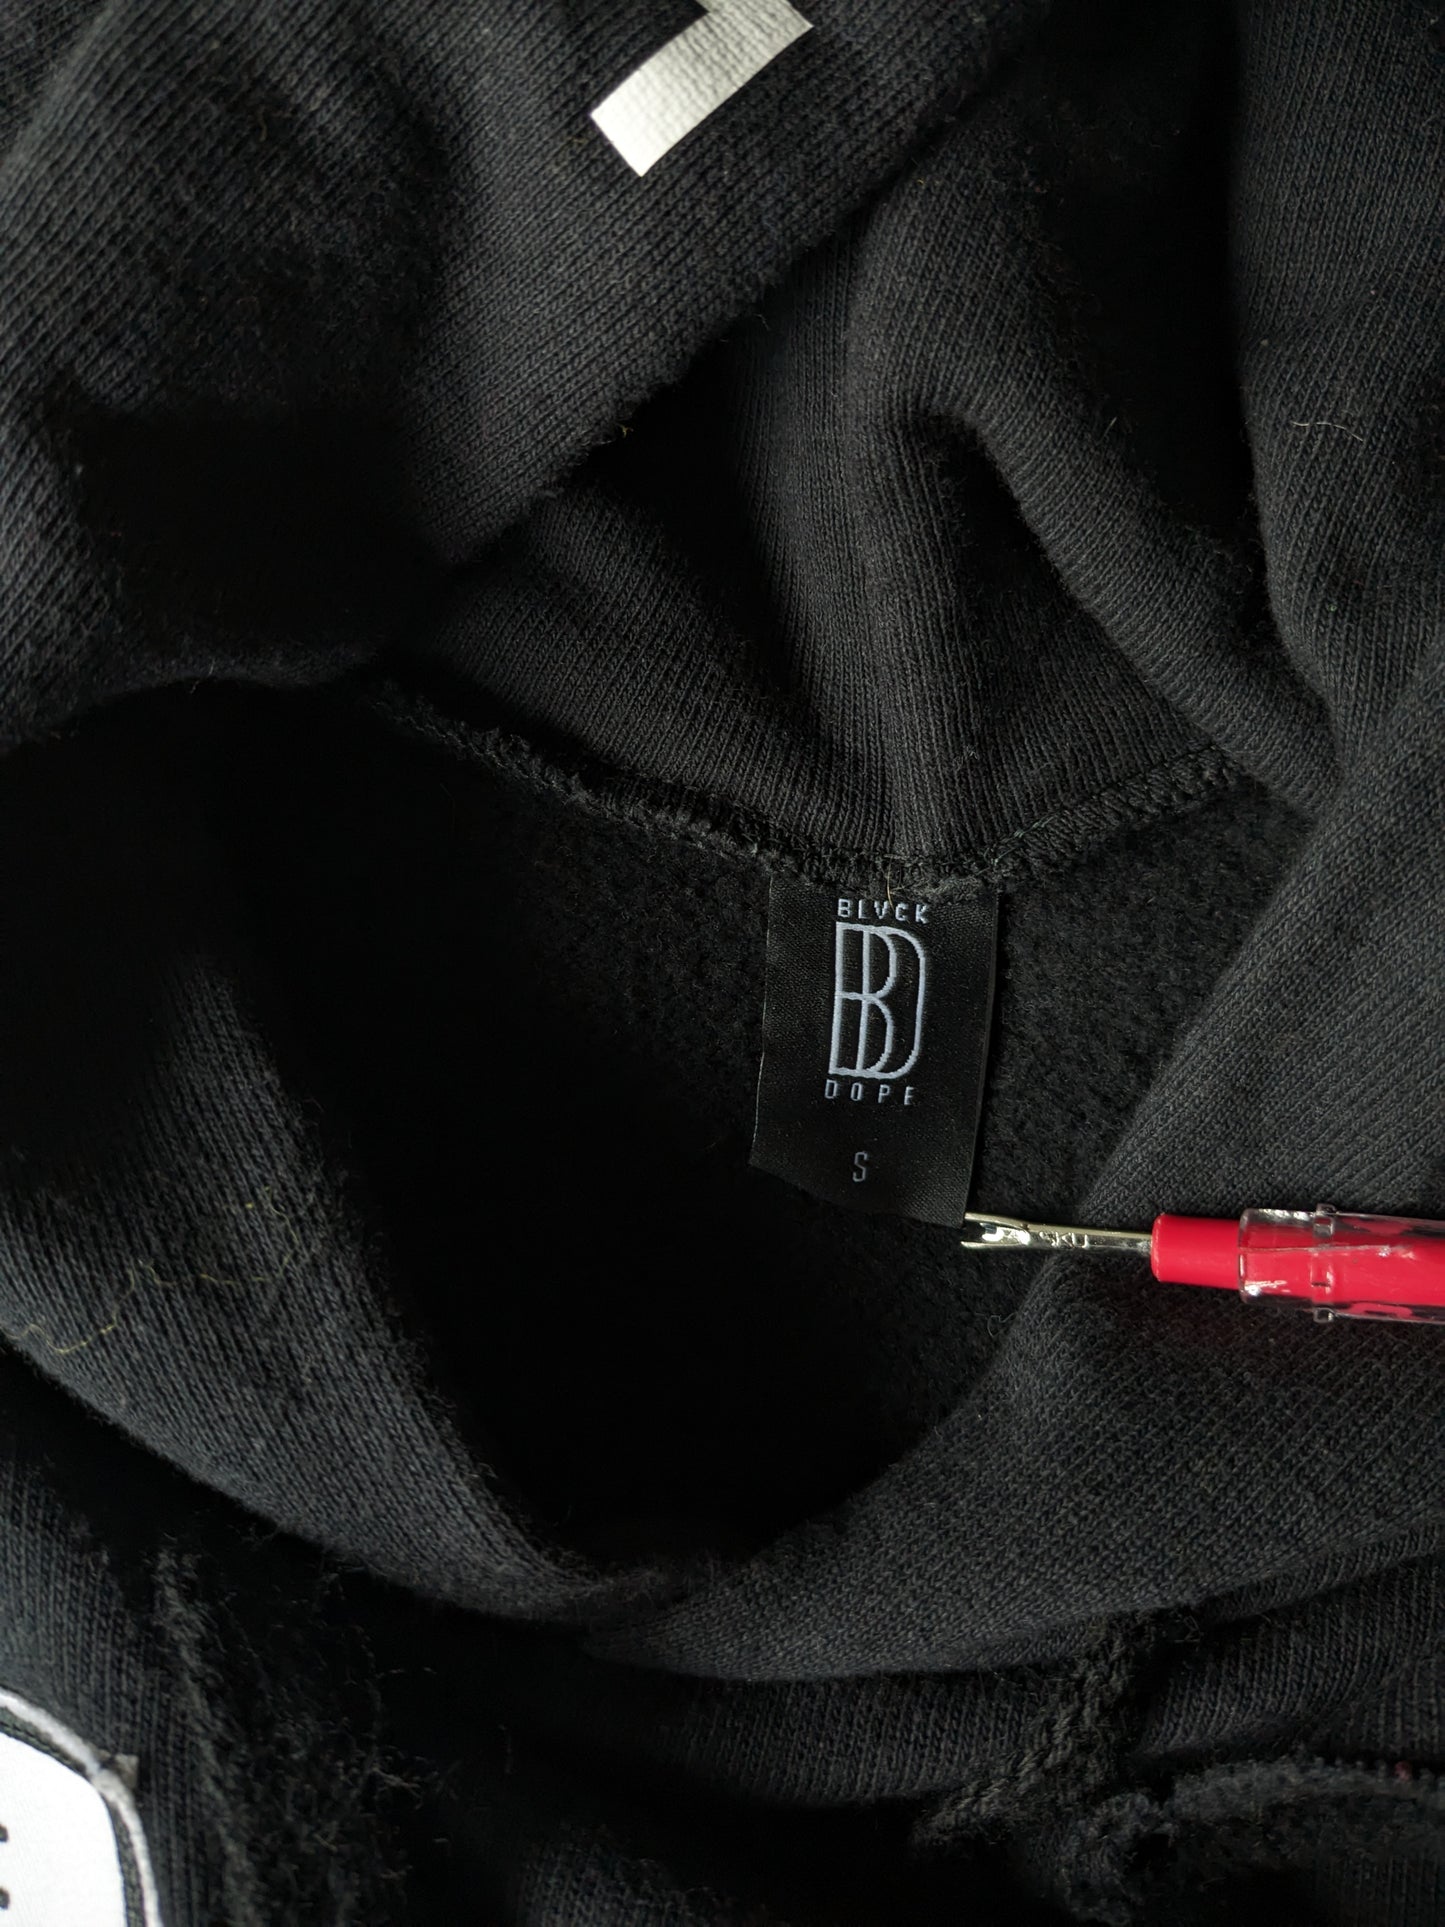 Blvckdope Sweat à capuche. Noir avec des trous et des applications décoratifs. Taille S.